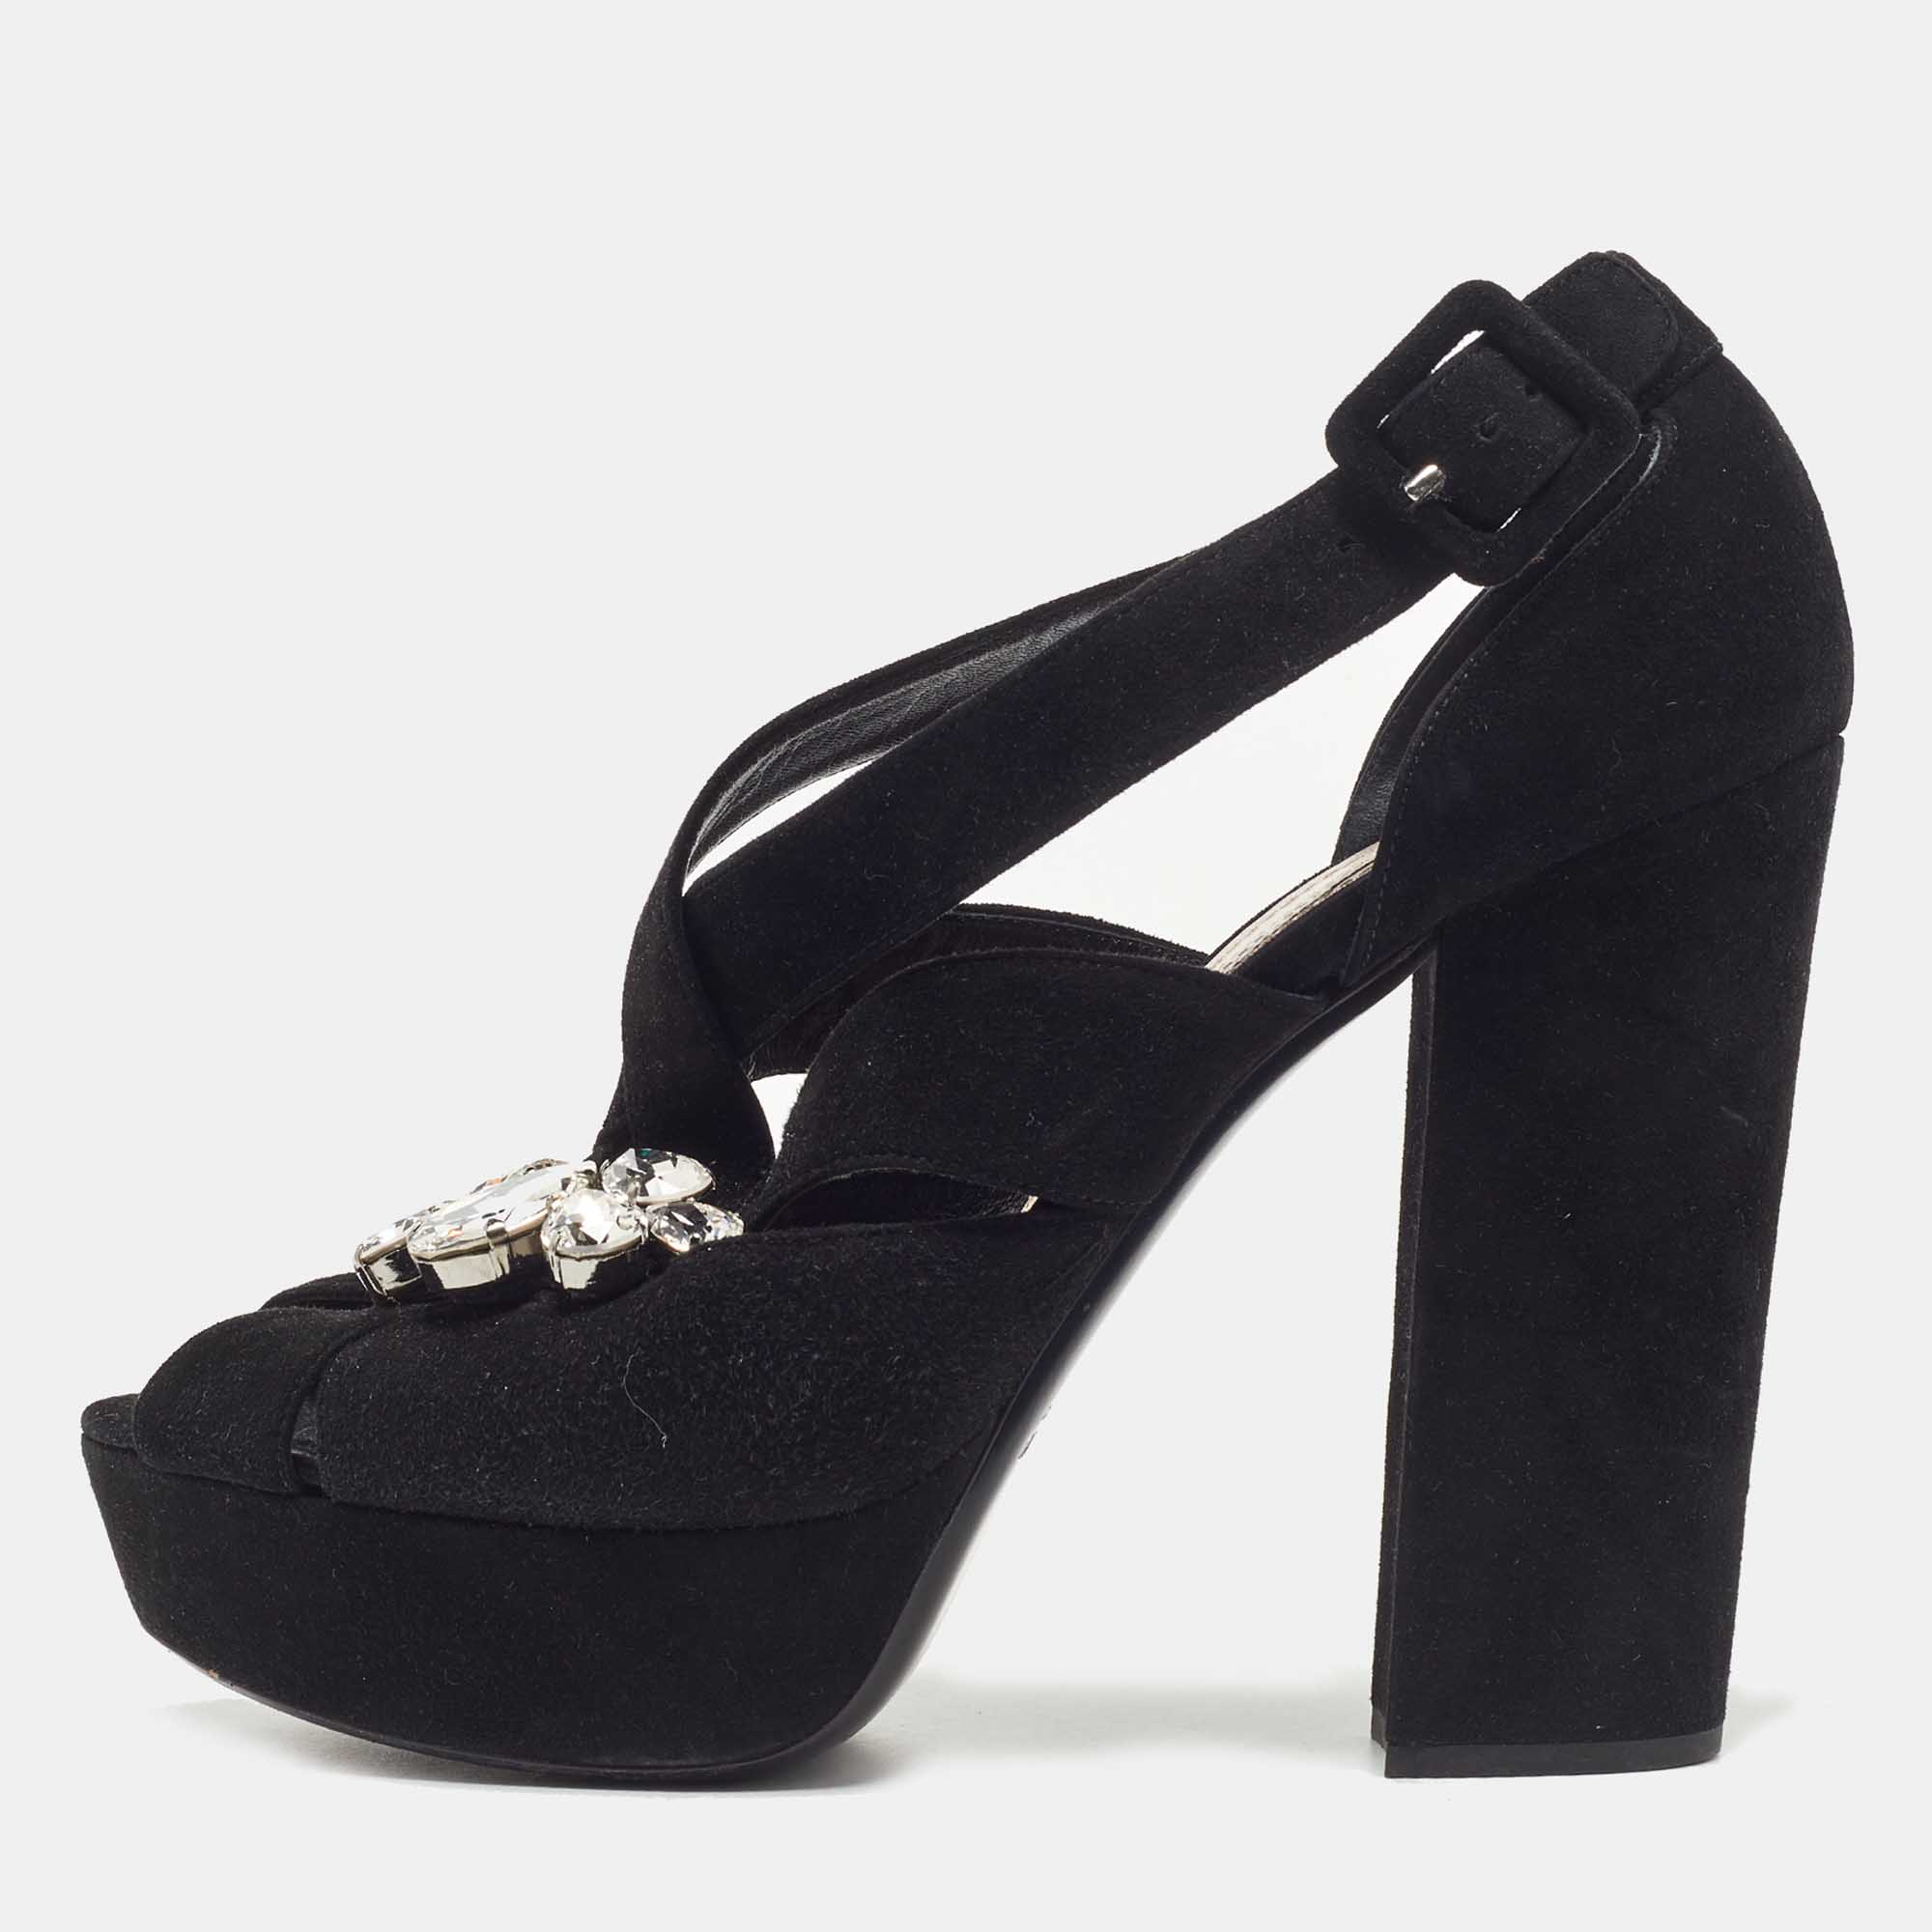 Miu miu black suede crystal embellished platform sandals size 40